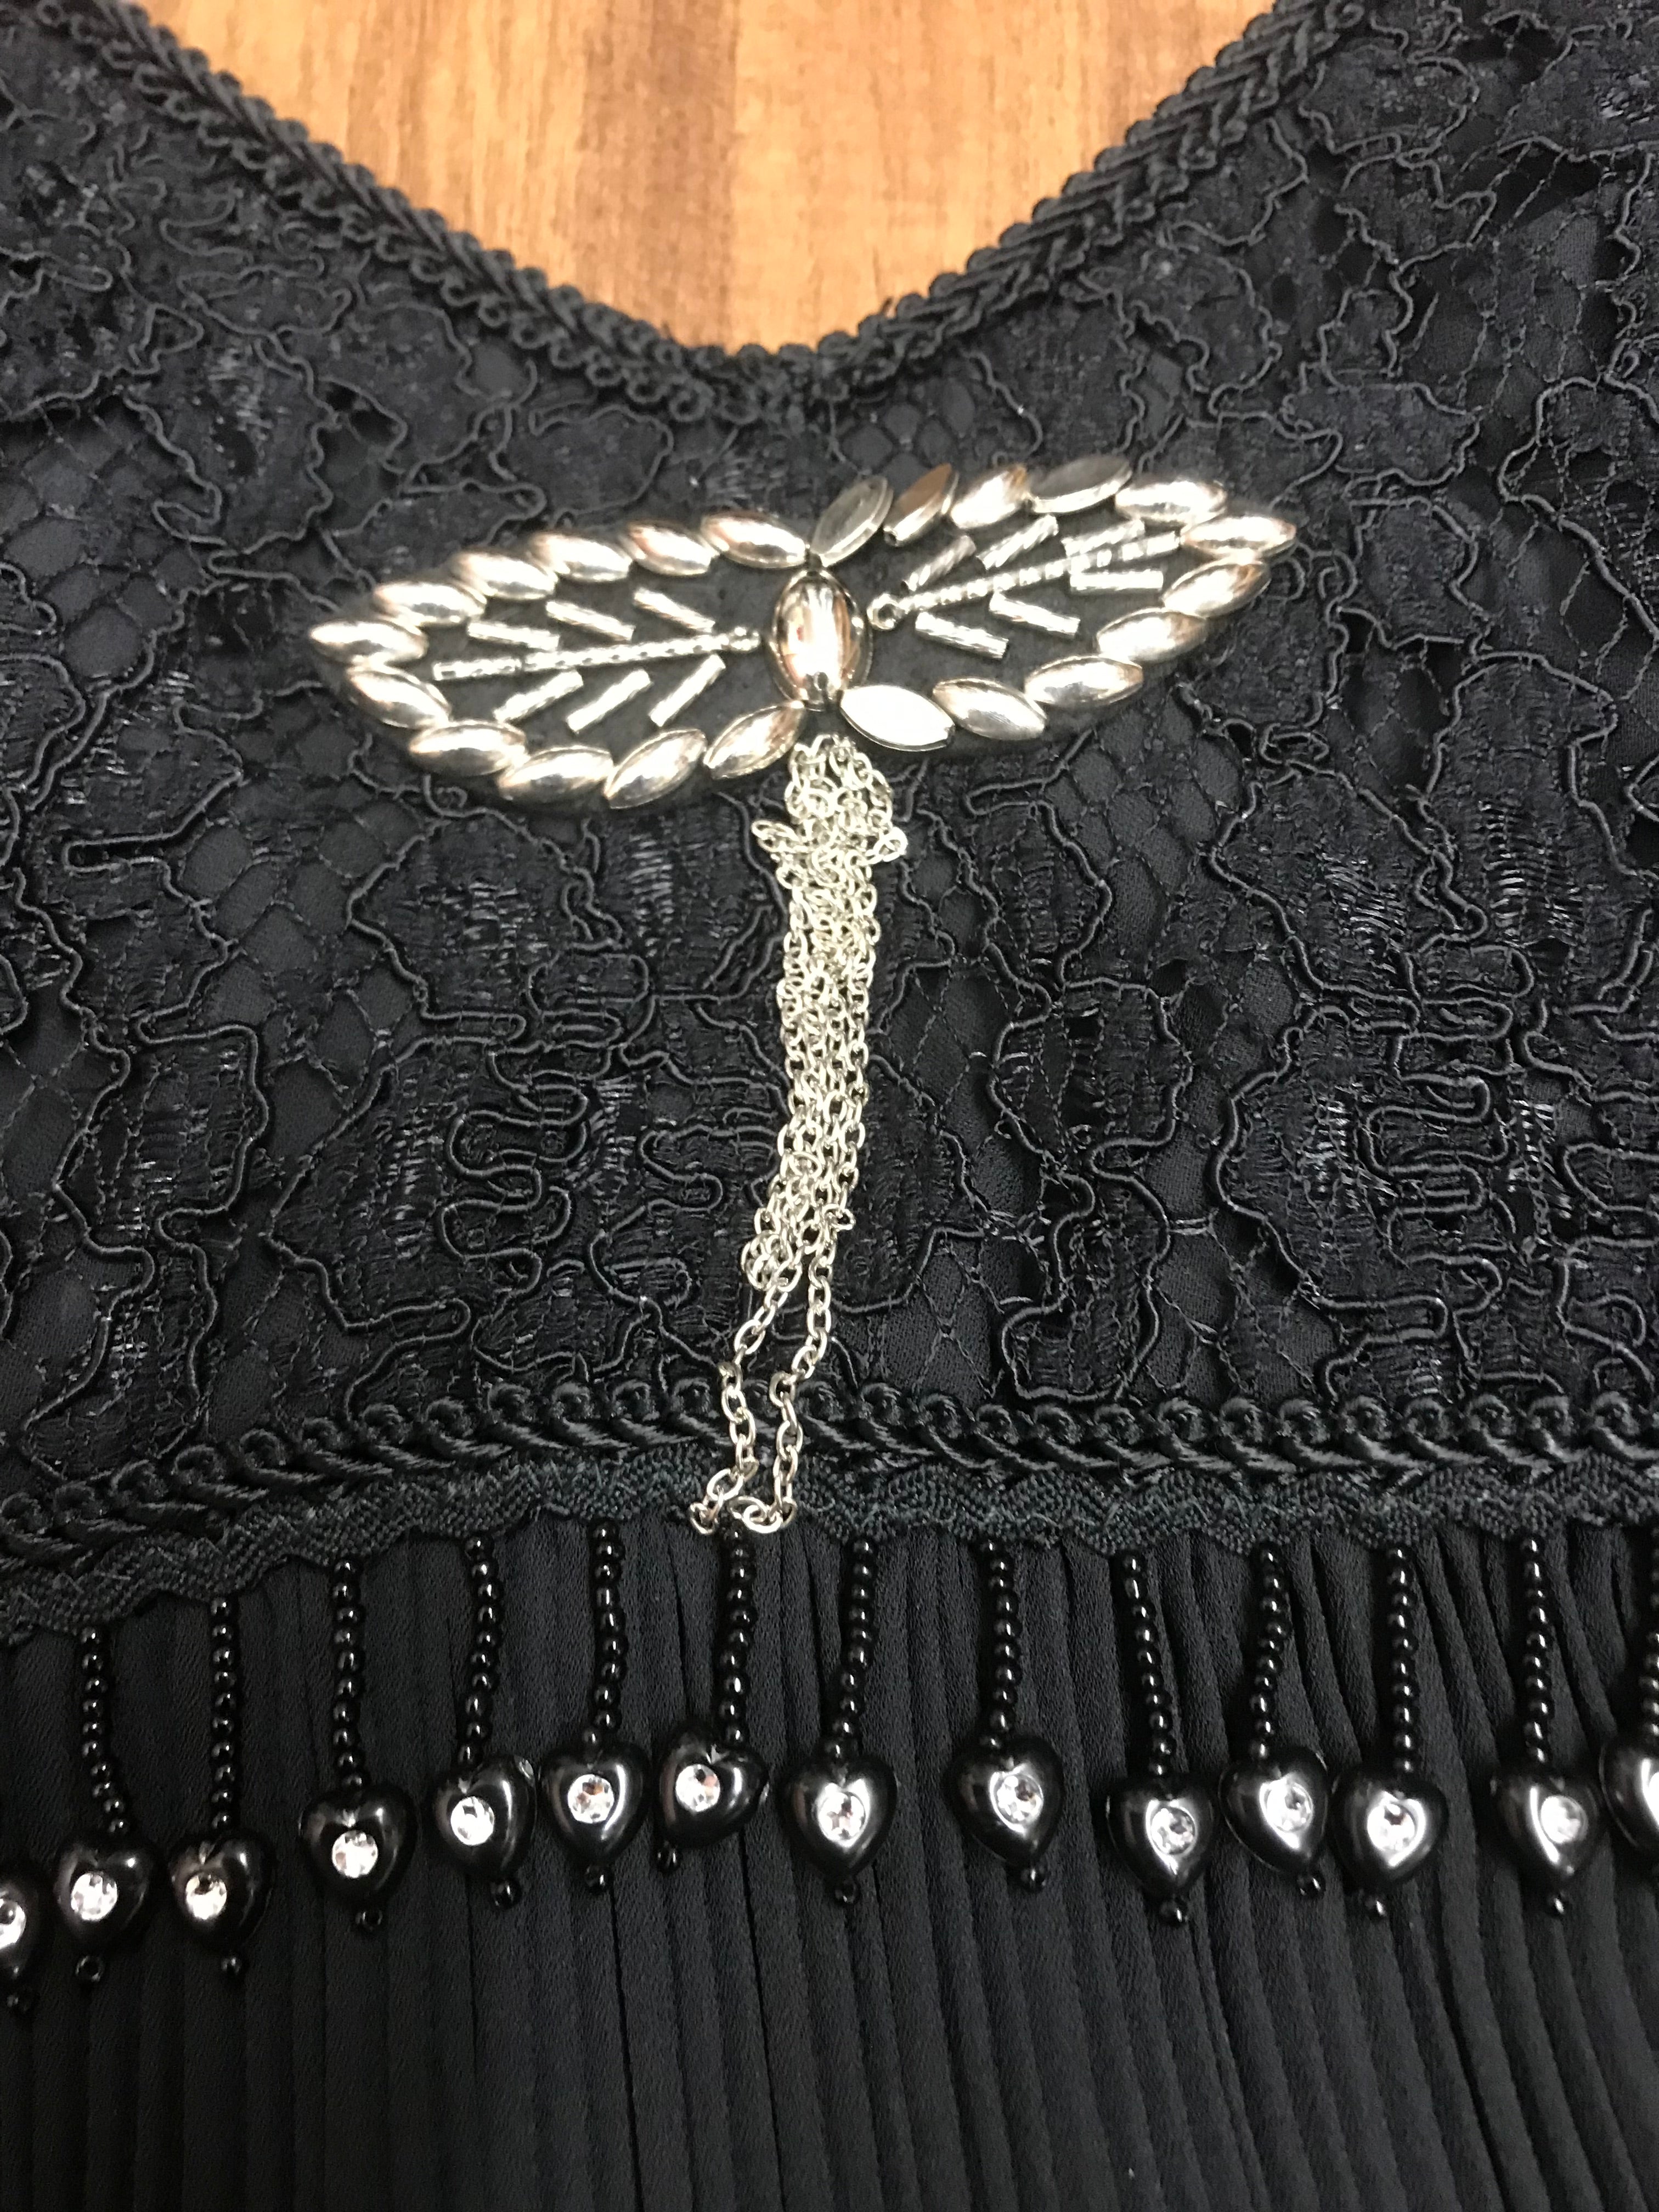 Hochwertiges Flapperkleid 20er Jahre Mode, Charlestonkleid Gr.34 schwarz